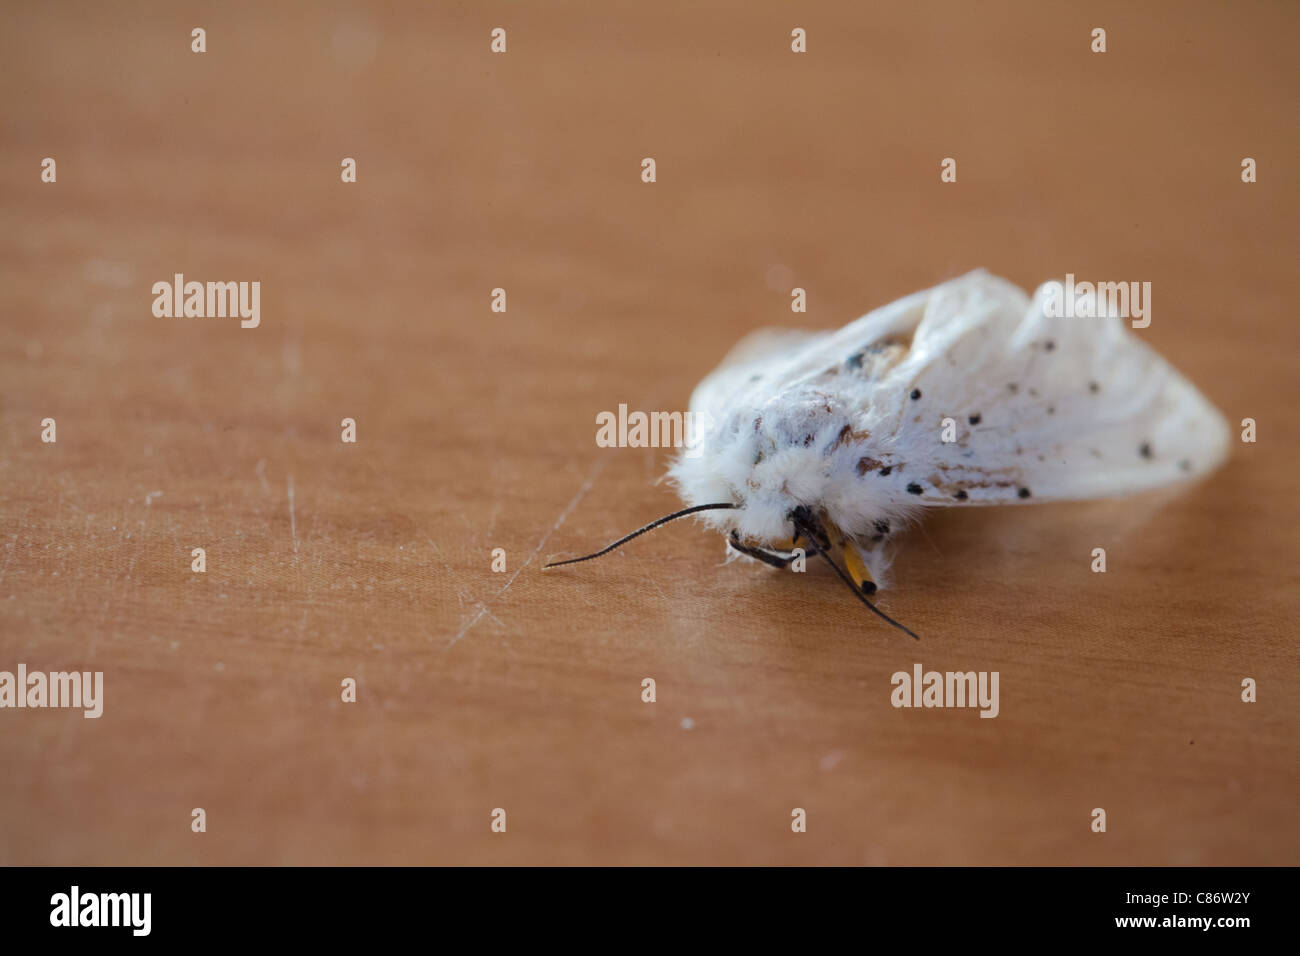 Ermellino bianco moth seduto su una superficie in legno Foto Stock